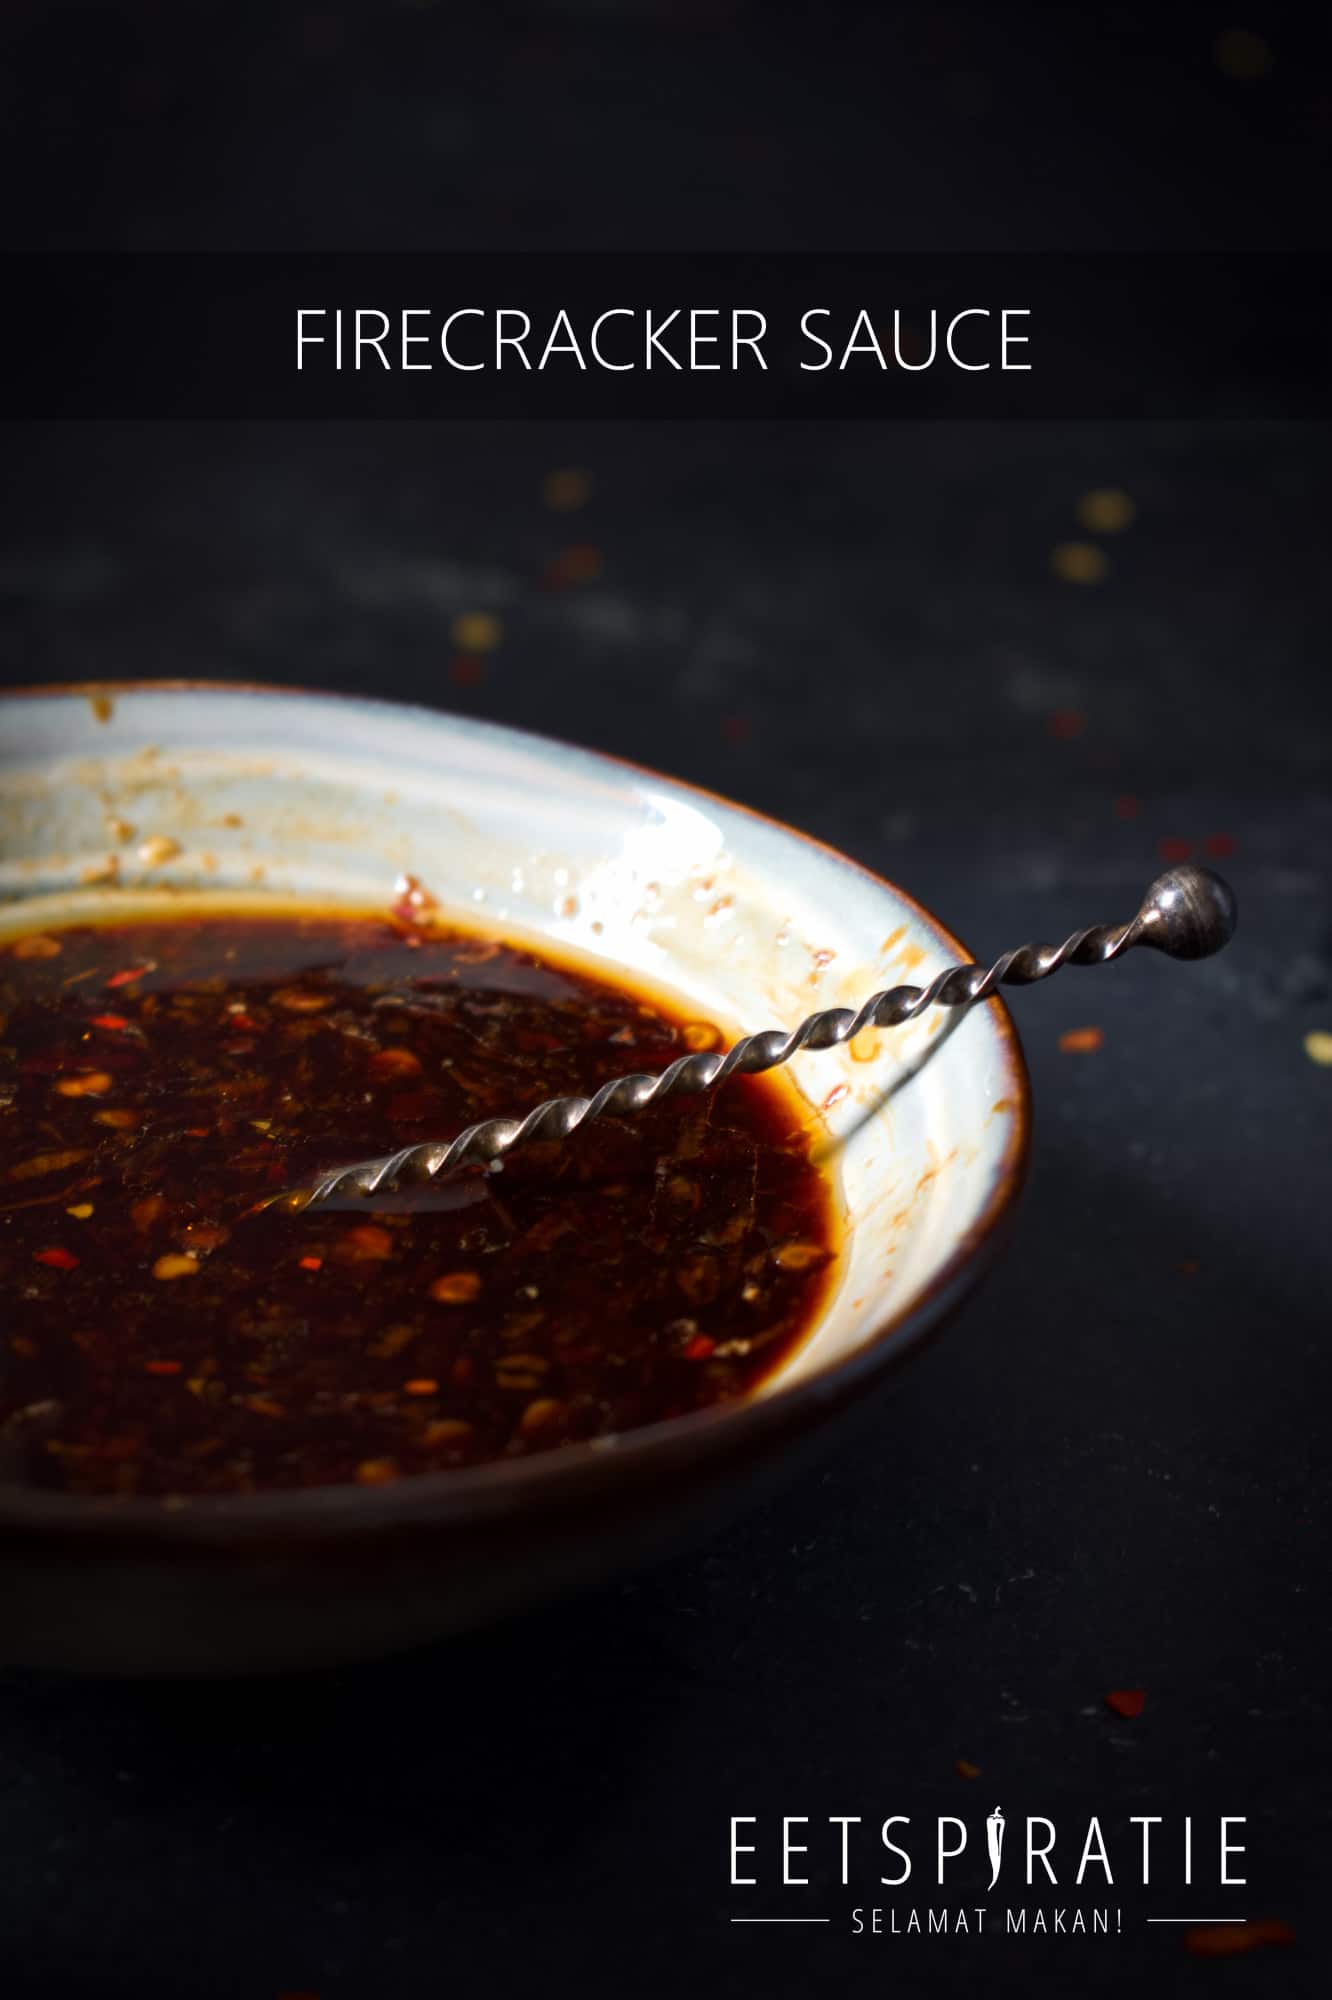 Firecracker sauce